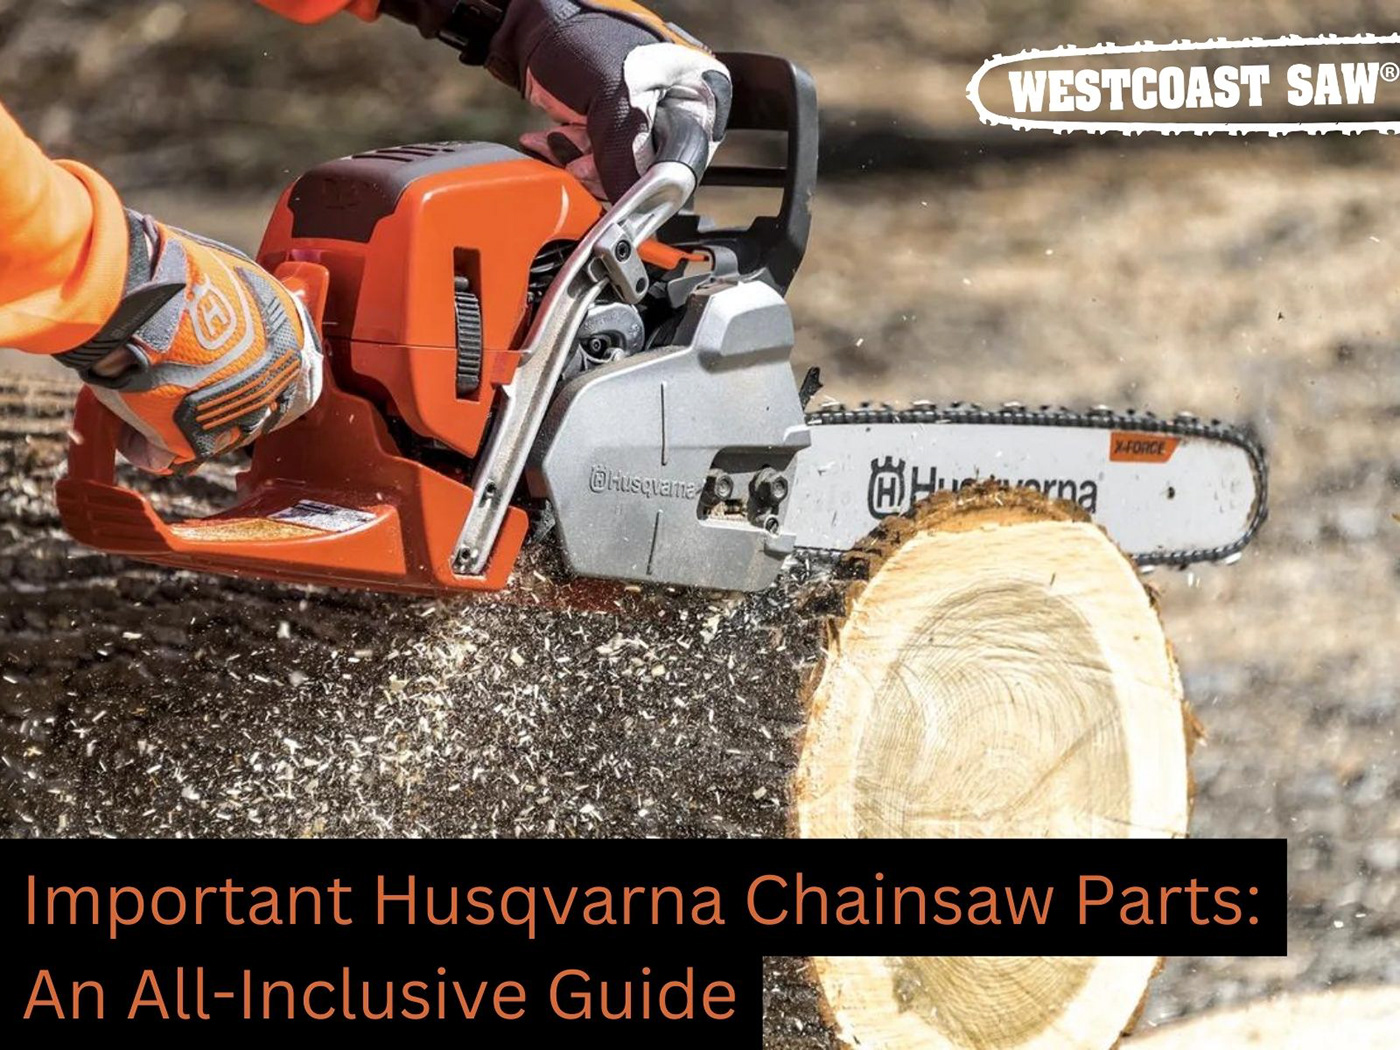 Chainsaw Man husqvarna chain saw chainsaw machine chainsaw parts westcoast saw